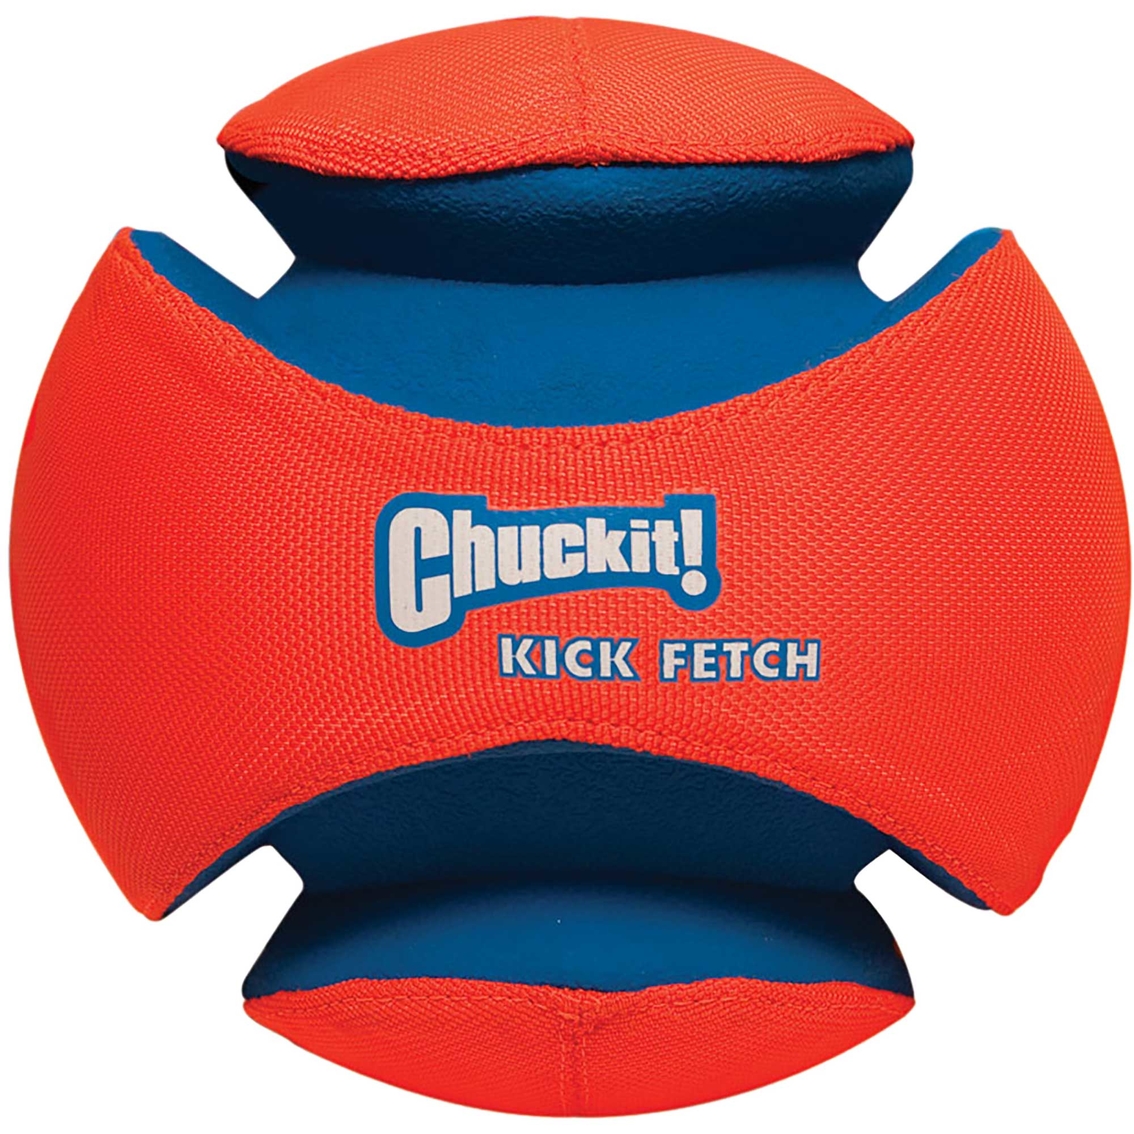 Petmate Chuckit! Large Kick Fetch Dog Ball - Image 2 of 3